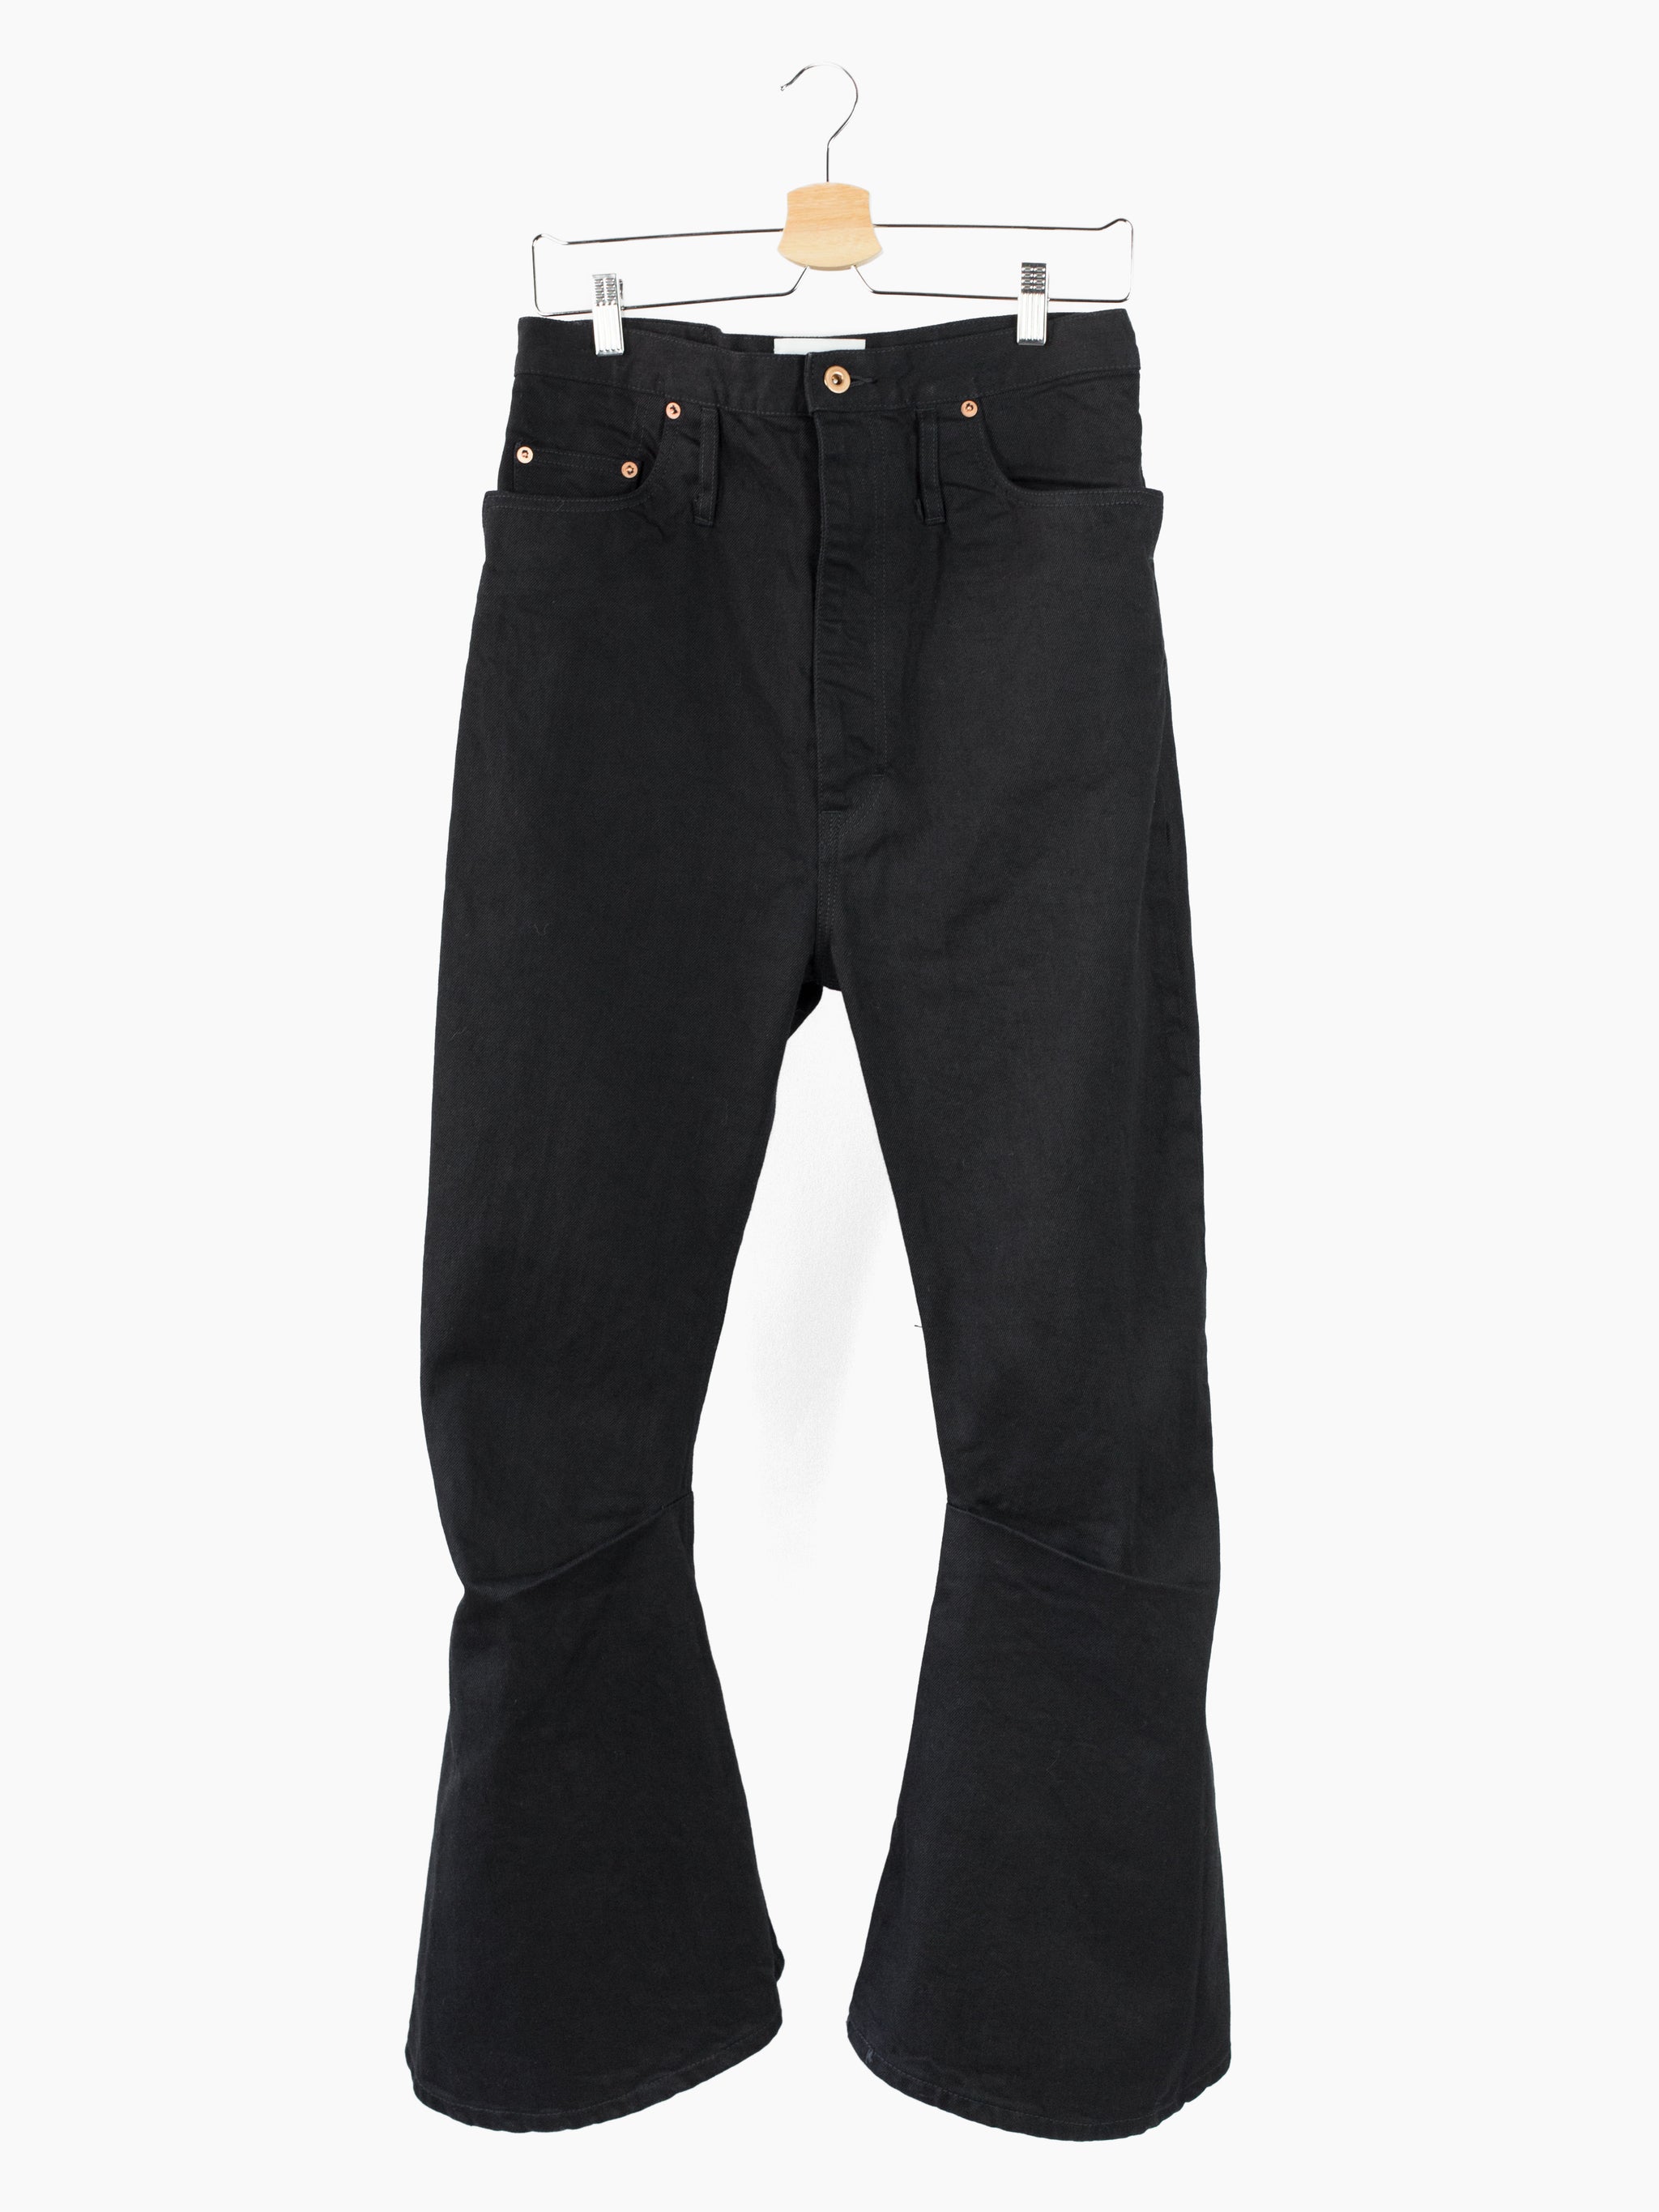 Kozaburo 3d bootcut jeans-